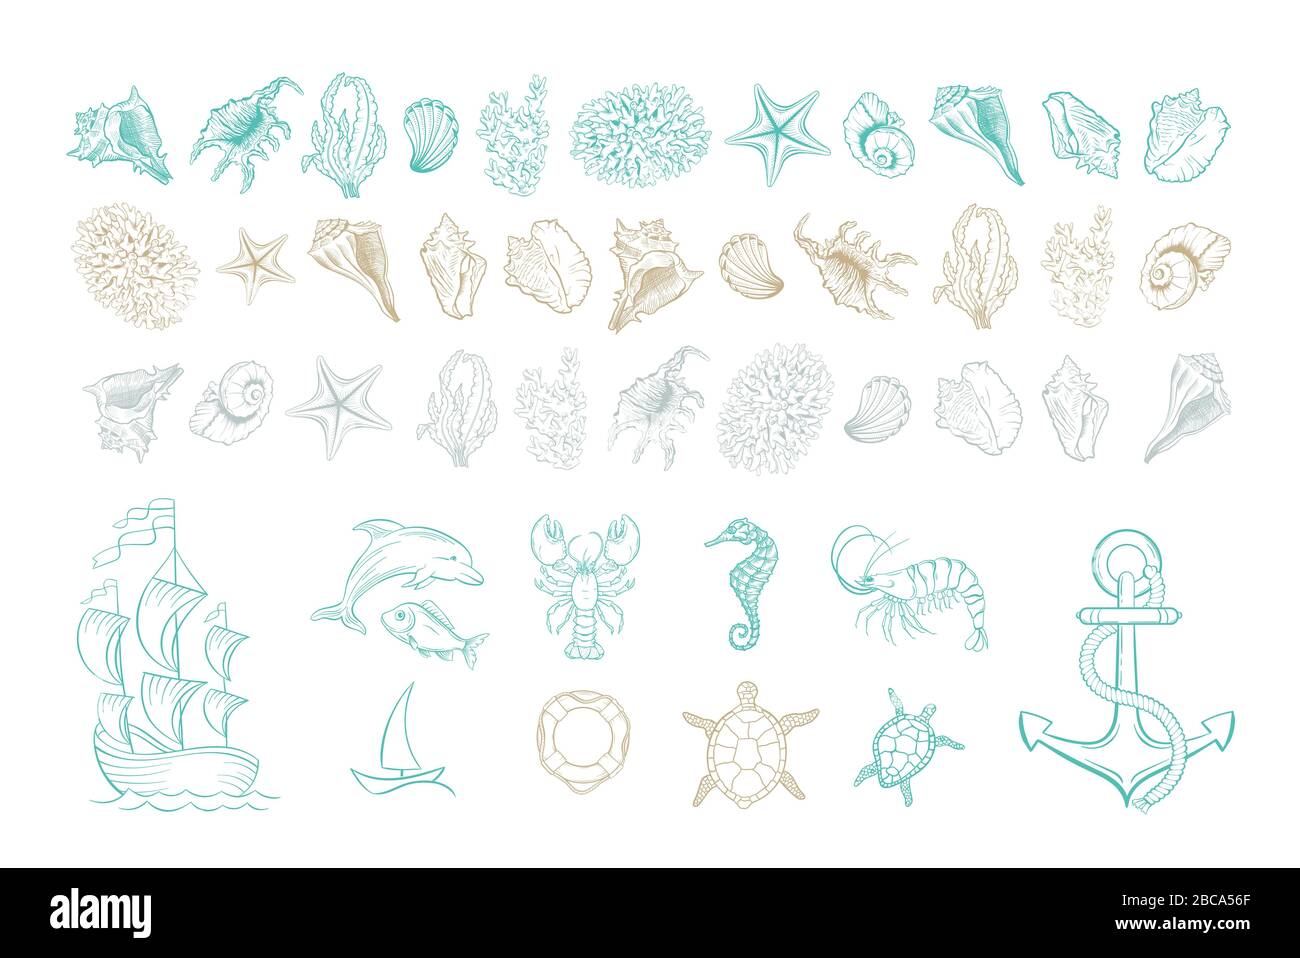 Linee marine icone vettoriali d'arte di conchiglie, ancora e molluschi. Insieme disegnato a mano di schiusa di conchiglie marine, cavallucci marini, pesci delfini e tartarughe, ancora e boa, coralli, gamberetti e yacht nave Illustrazione Vettoriale